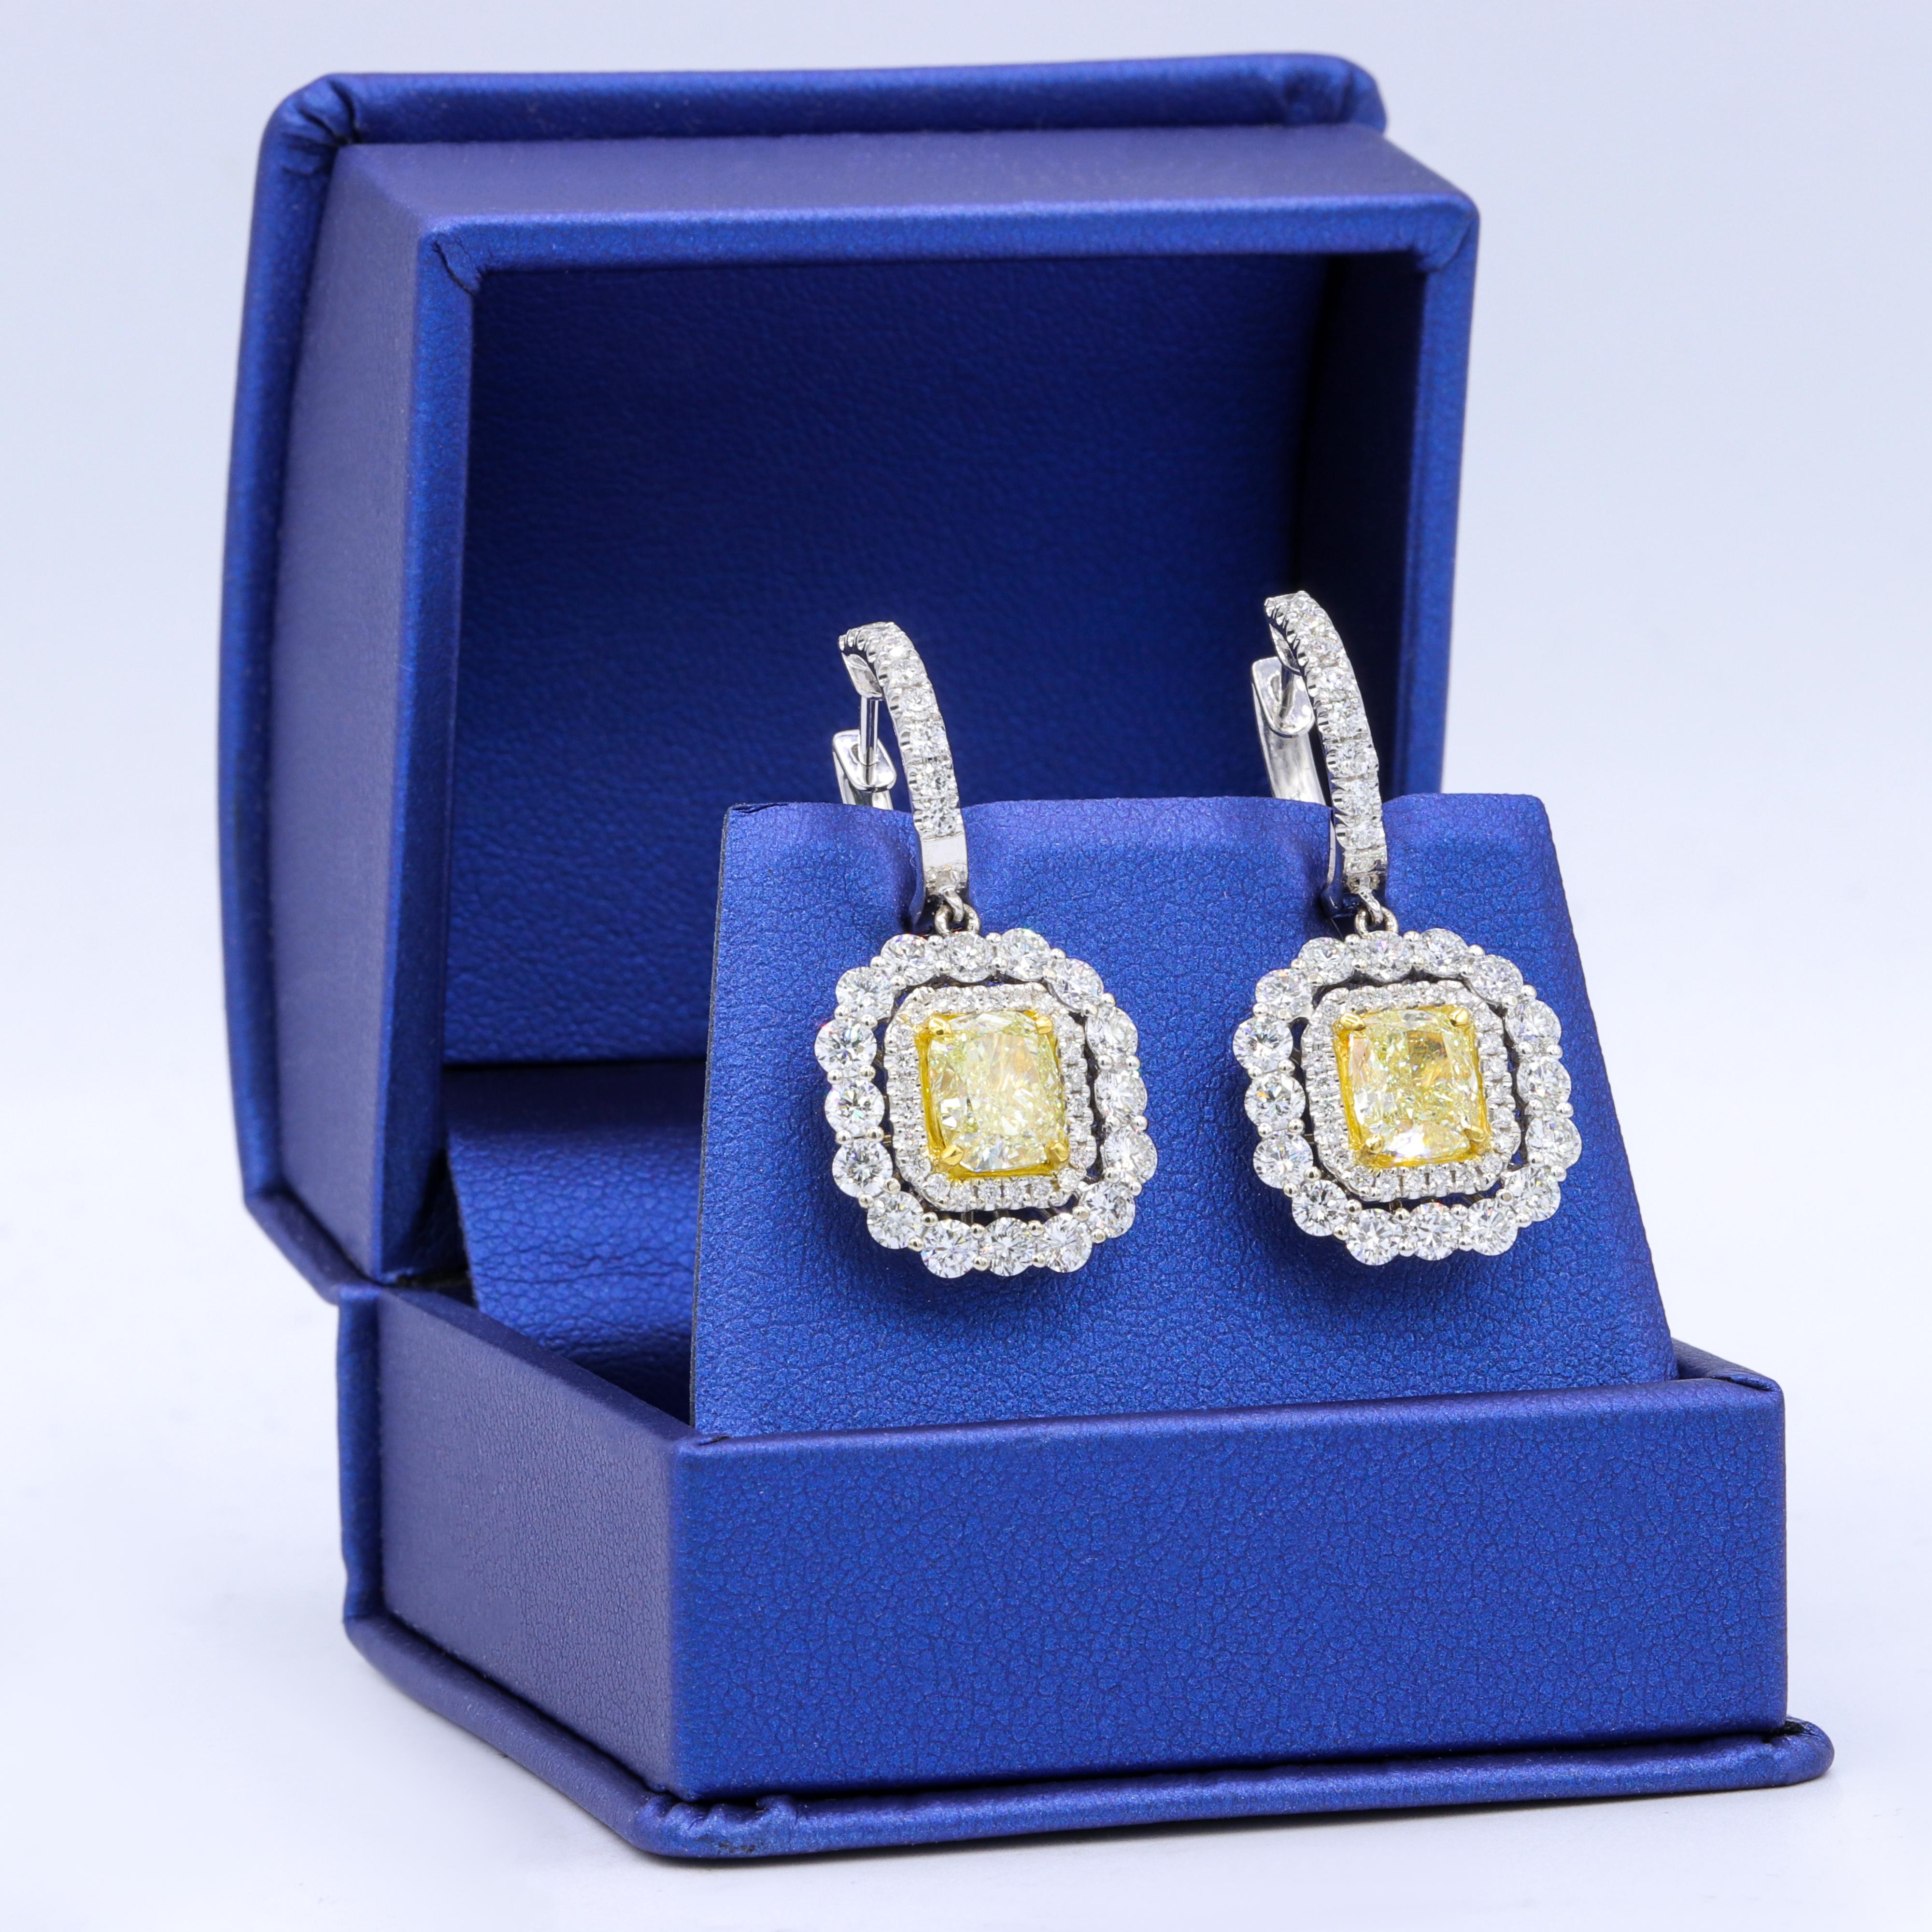 Les boucles d'oreilles sont ornées de diamants jaunes certifiés par le GIA (1,51ct VS1 et 1,52ct VS1), de diamants coussin de couleur jaune clair et de 3,00 carats de diamants blancs.